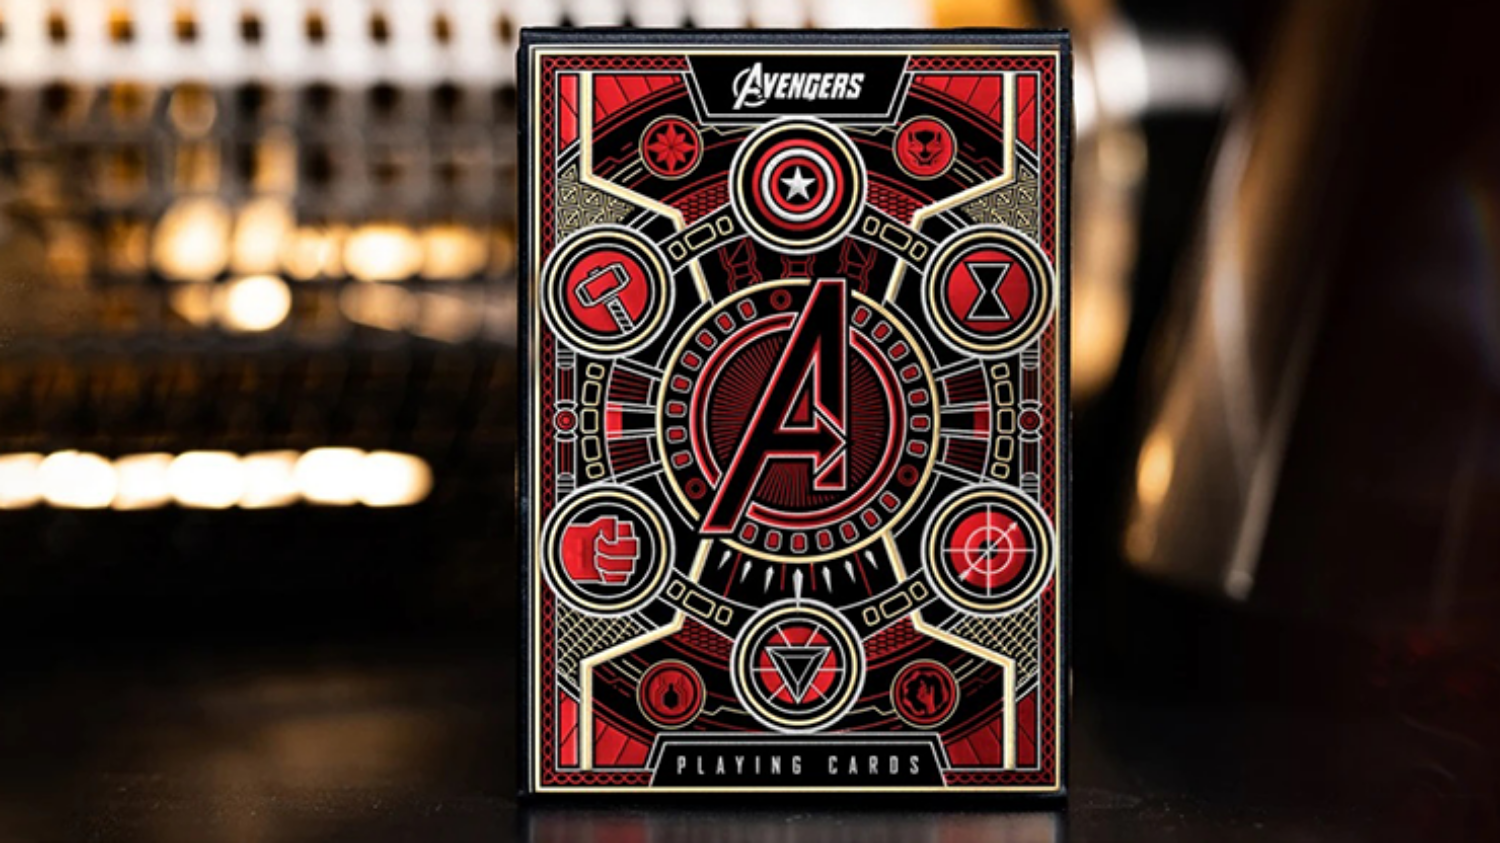 [레드 어벤져스 인피니티 사가 플레잉카드]Red Avengers Infinity Saga Playing Cards